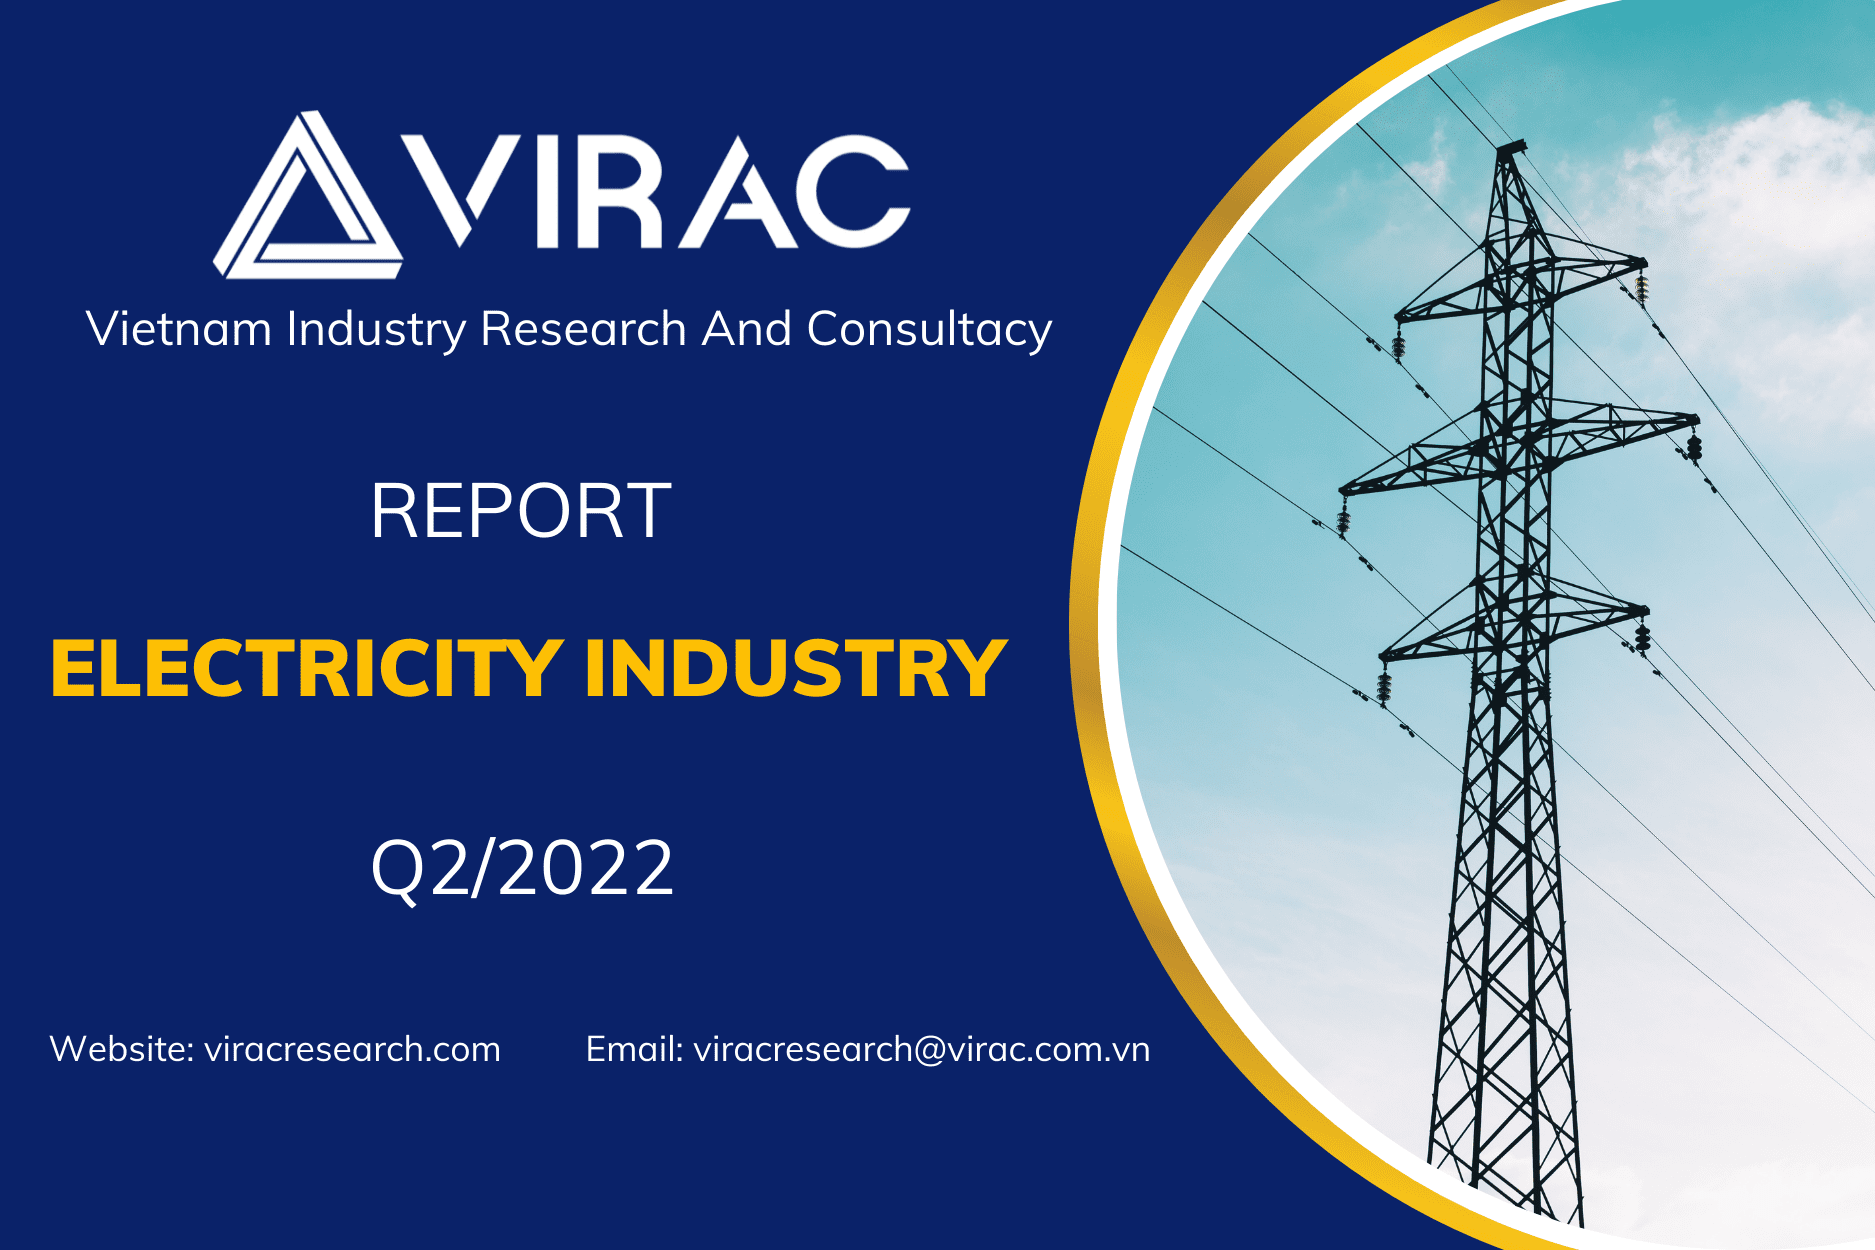 Vietnam Electricity Industry Report Q2/2022